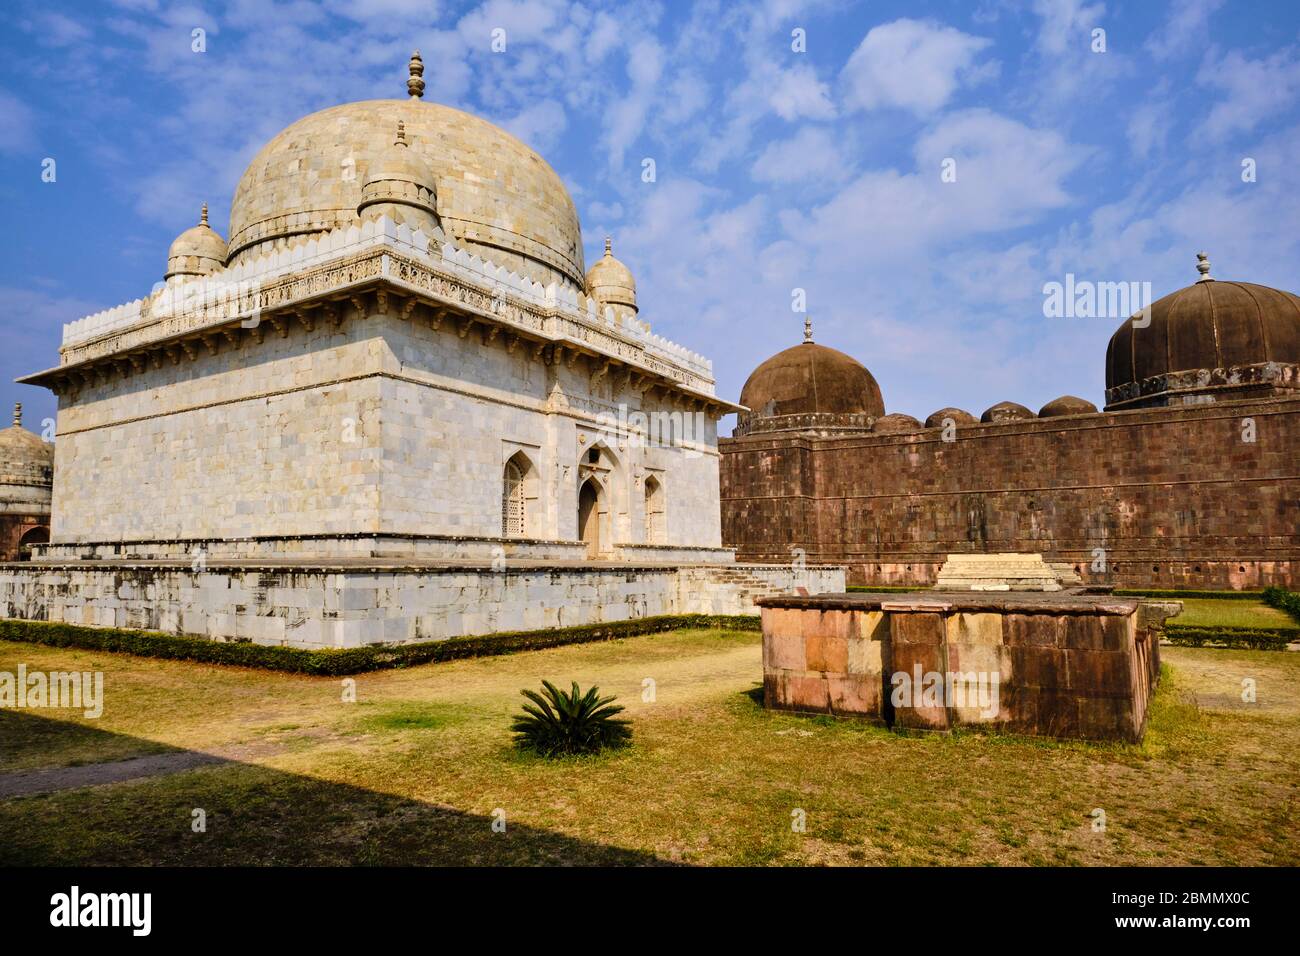 India, Stato di Madhya Pradesh, Mandu, tomba di Hoshang Shah, architettura afghana, il mausoleo di marmo più antico del paese Foto Stock